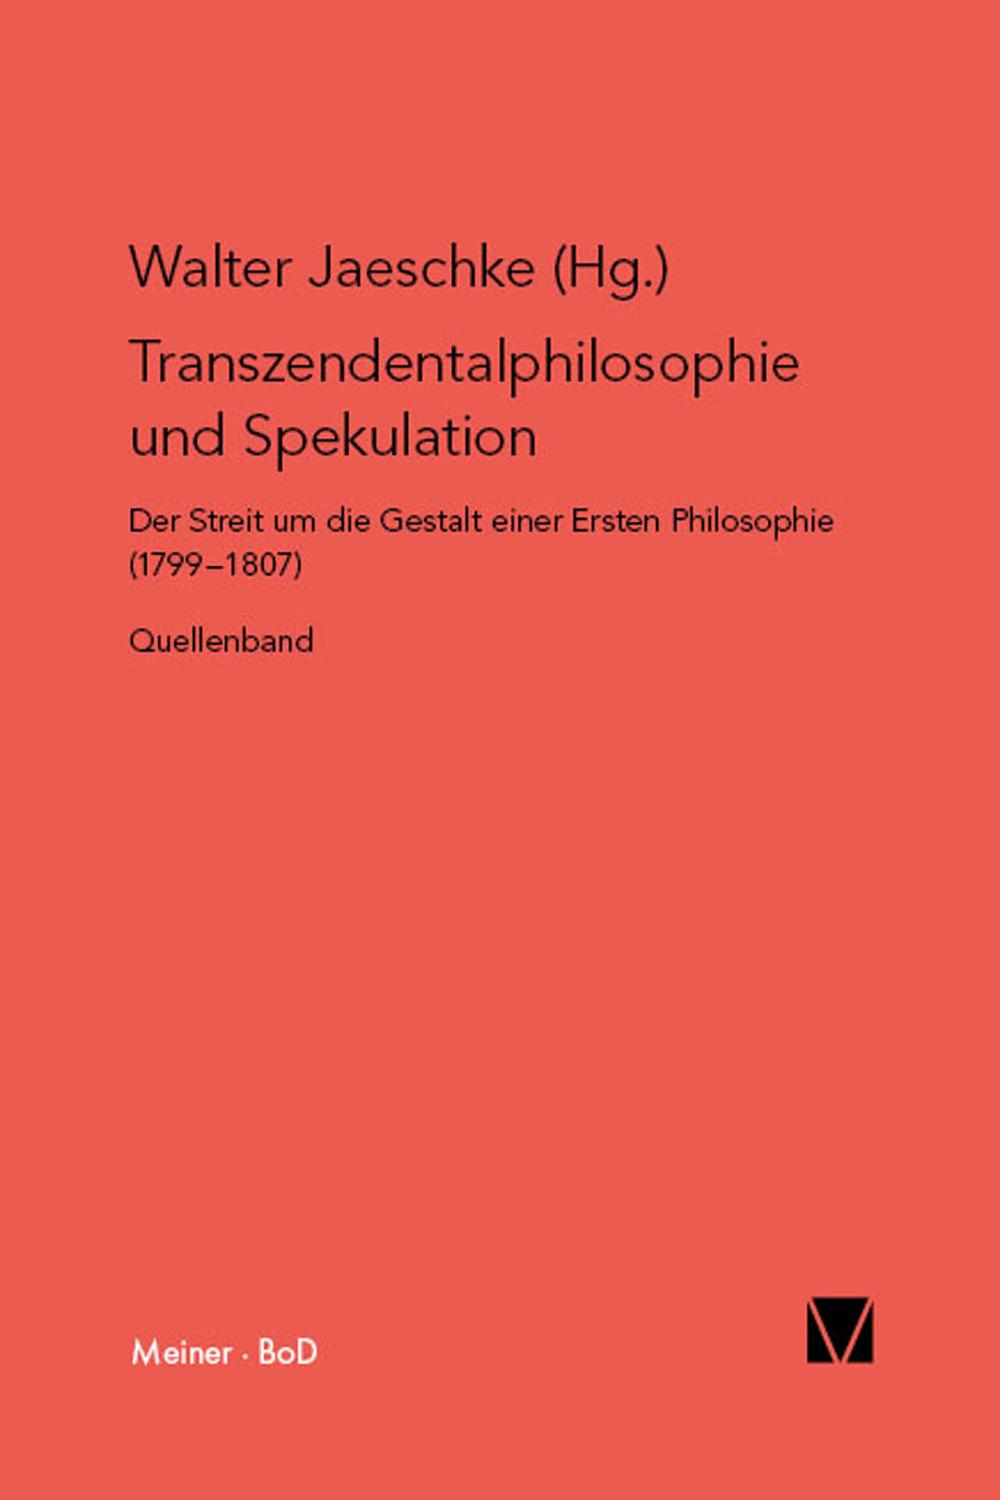 Transzendentalphilosophie und Spekulation - Walter Jaeschke